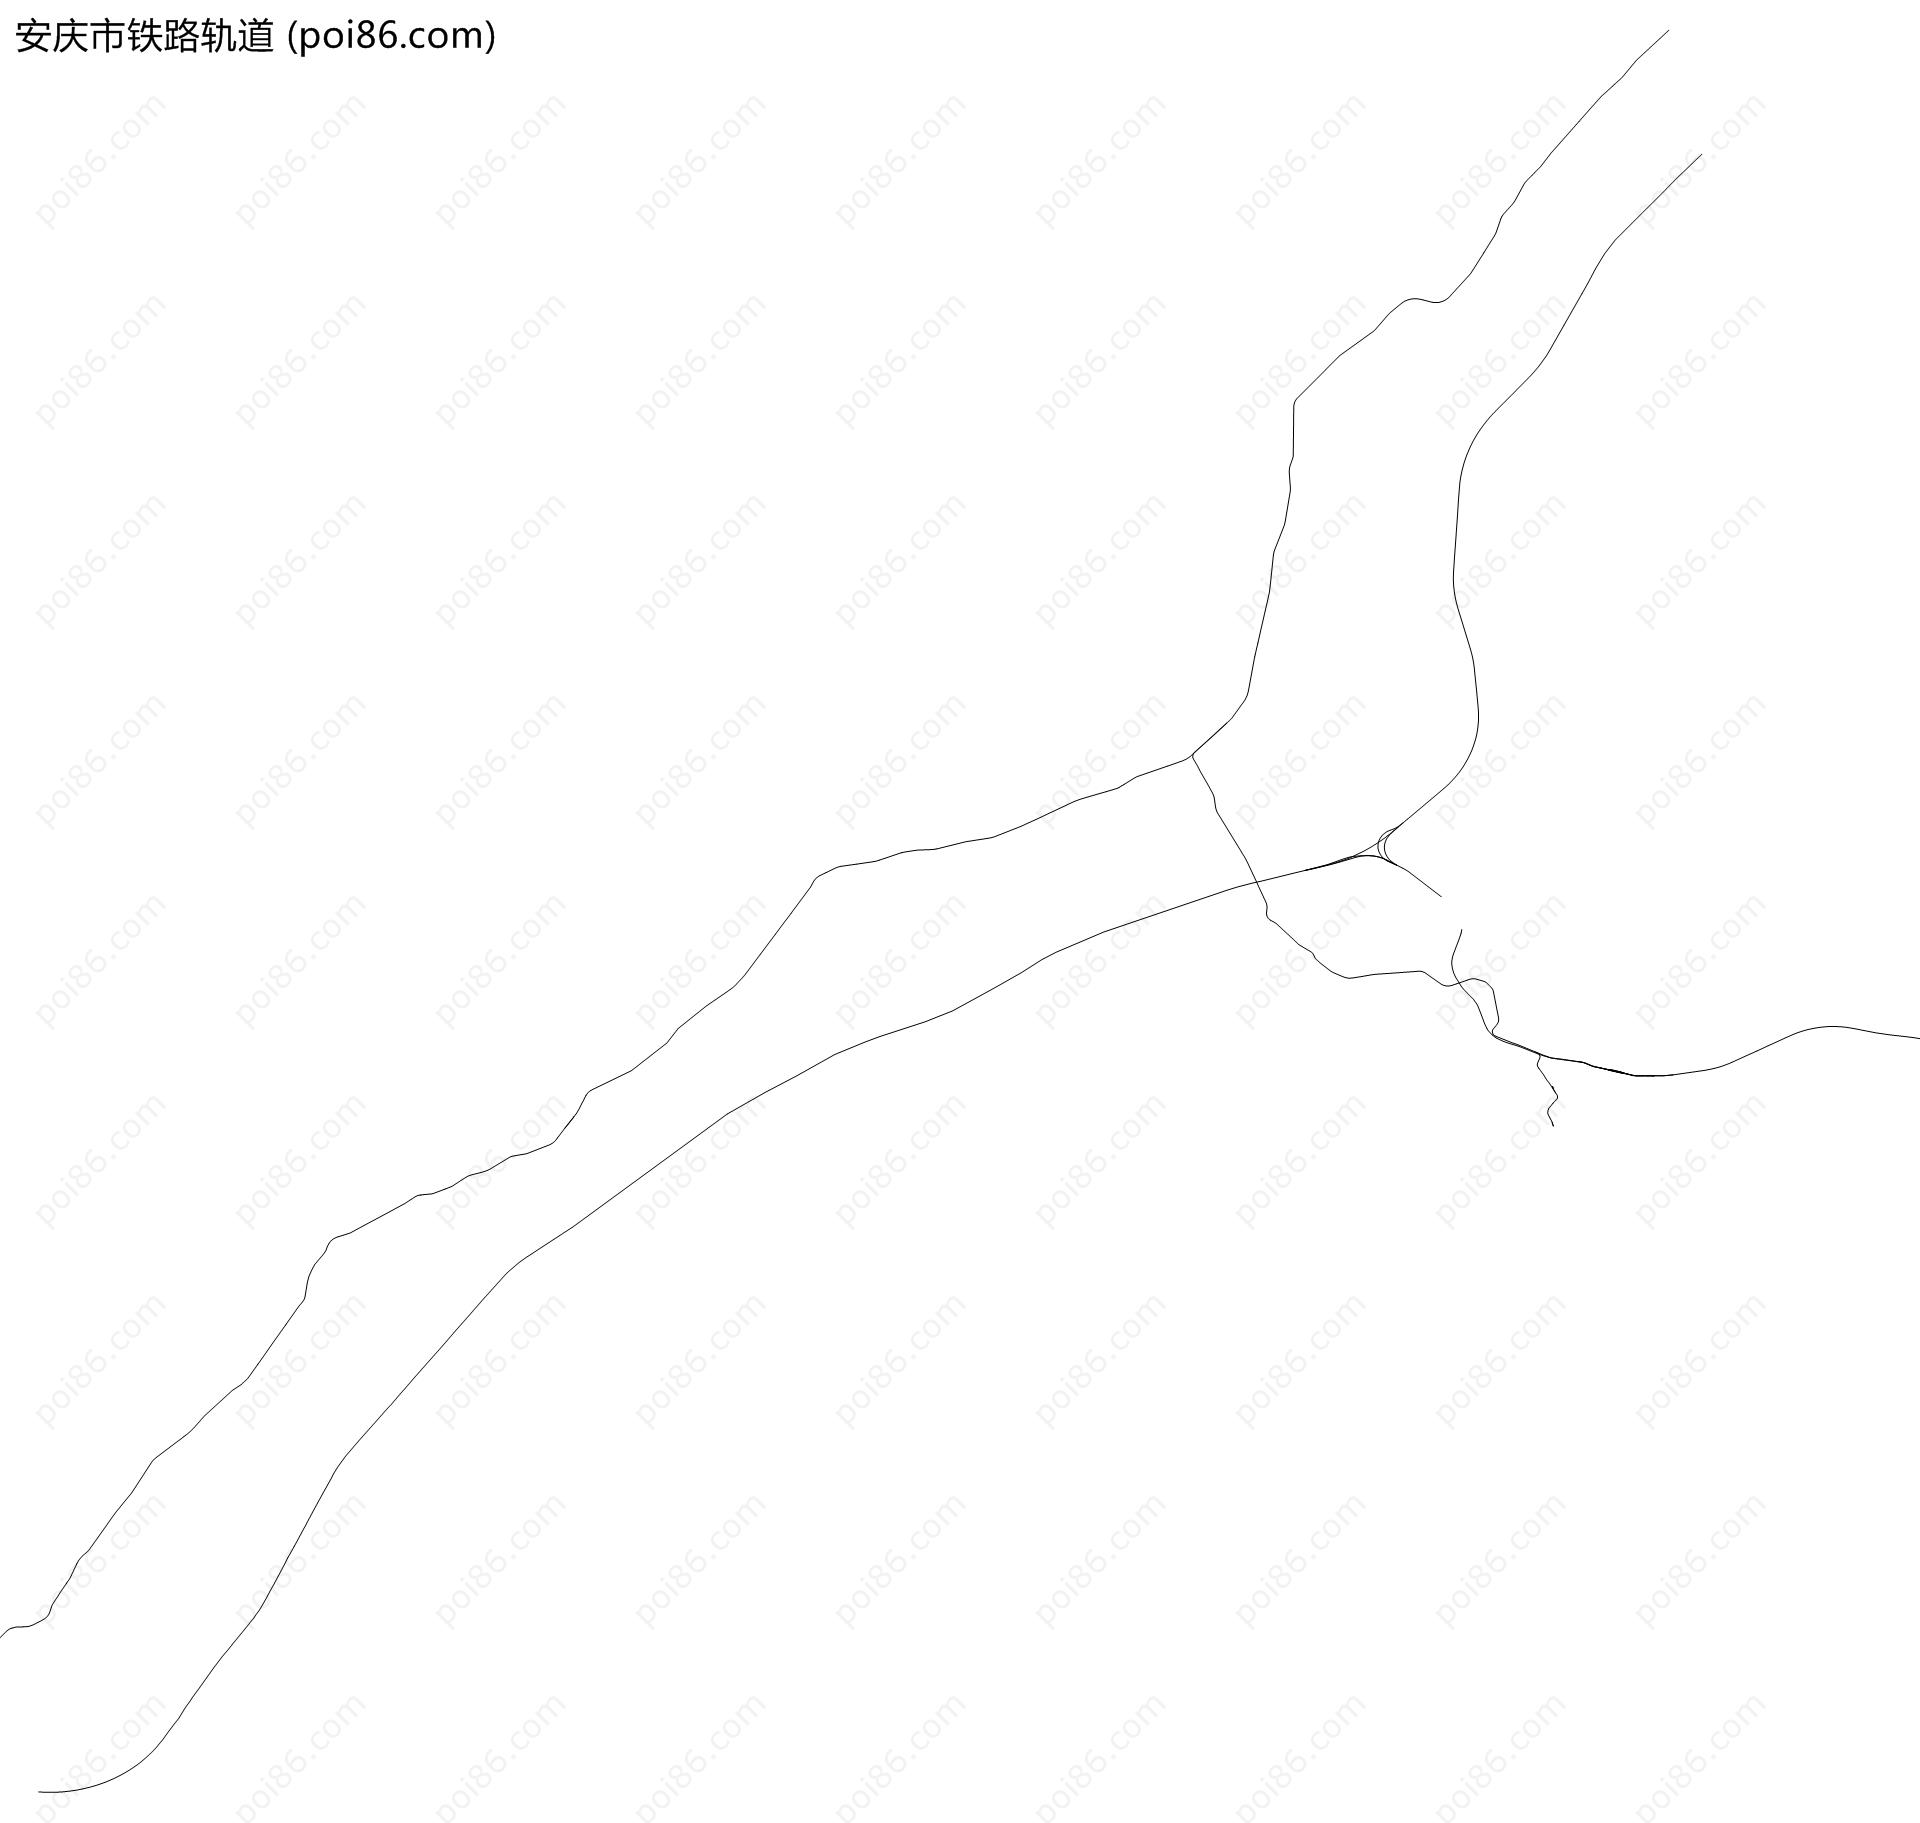 安庆市铁路轨道地图